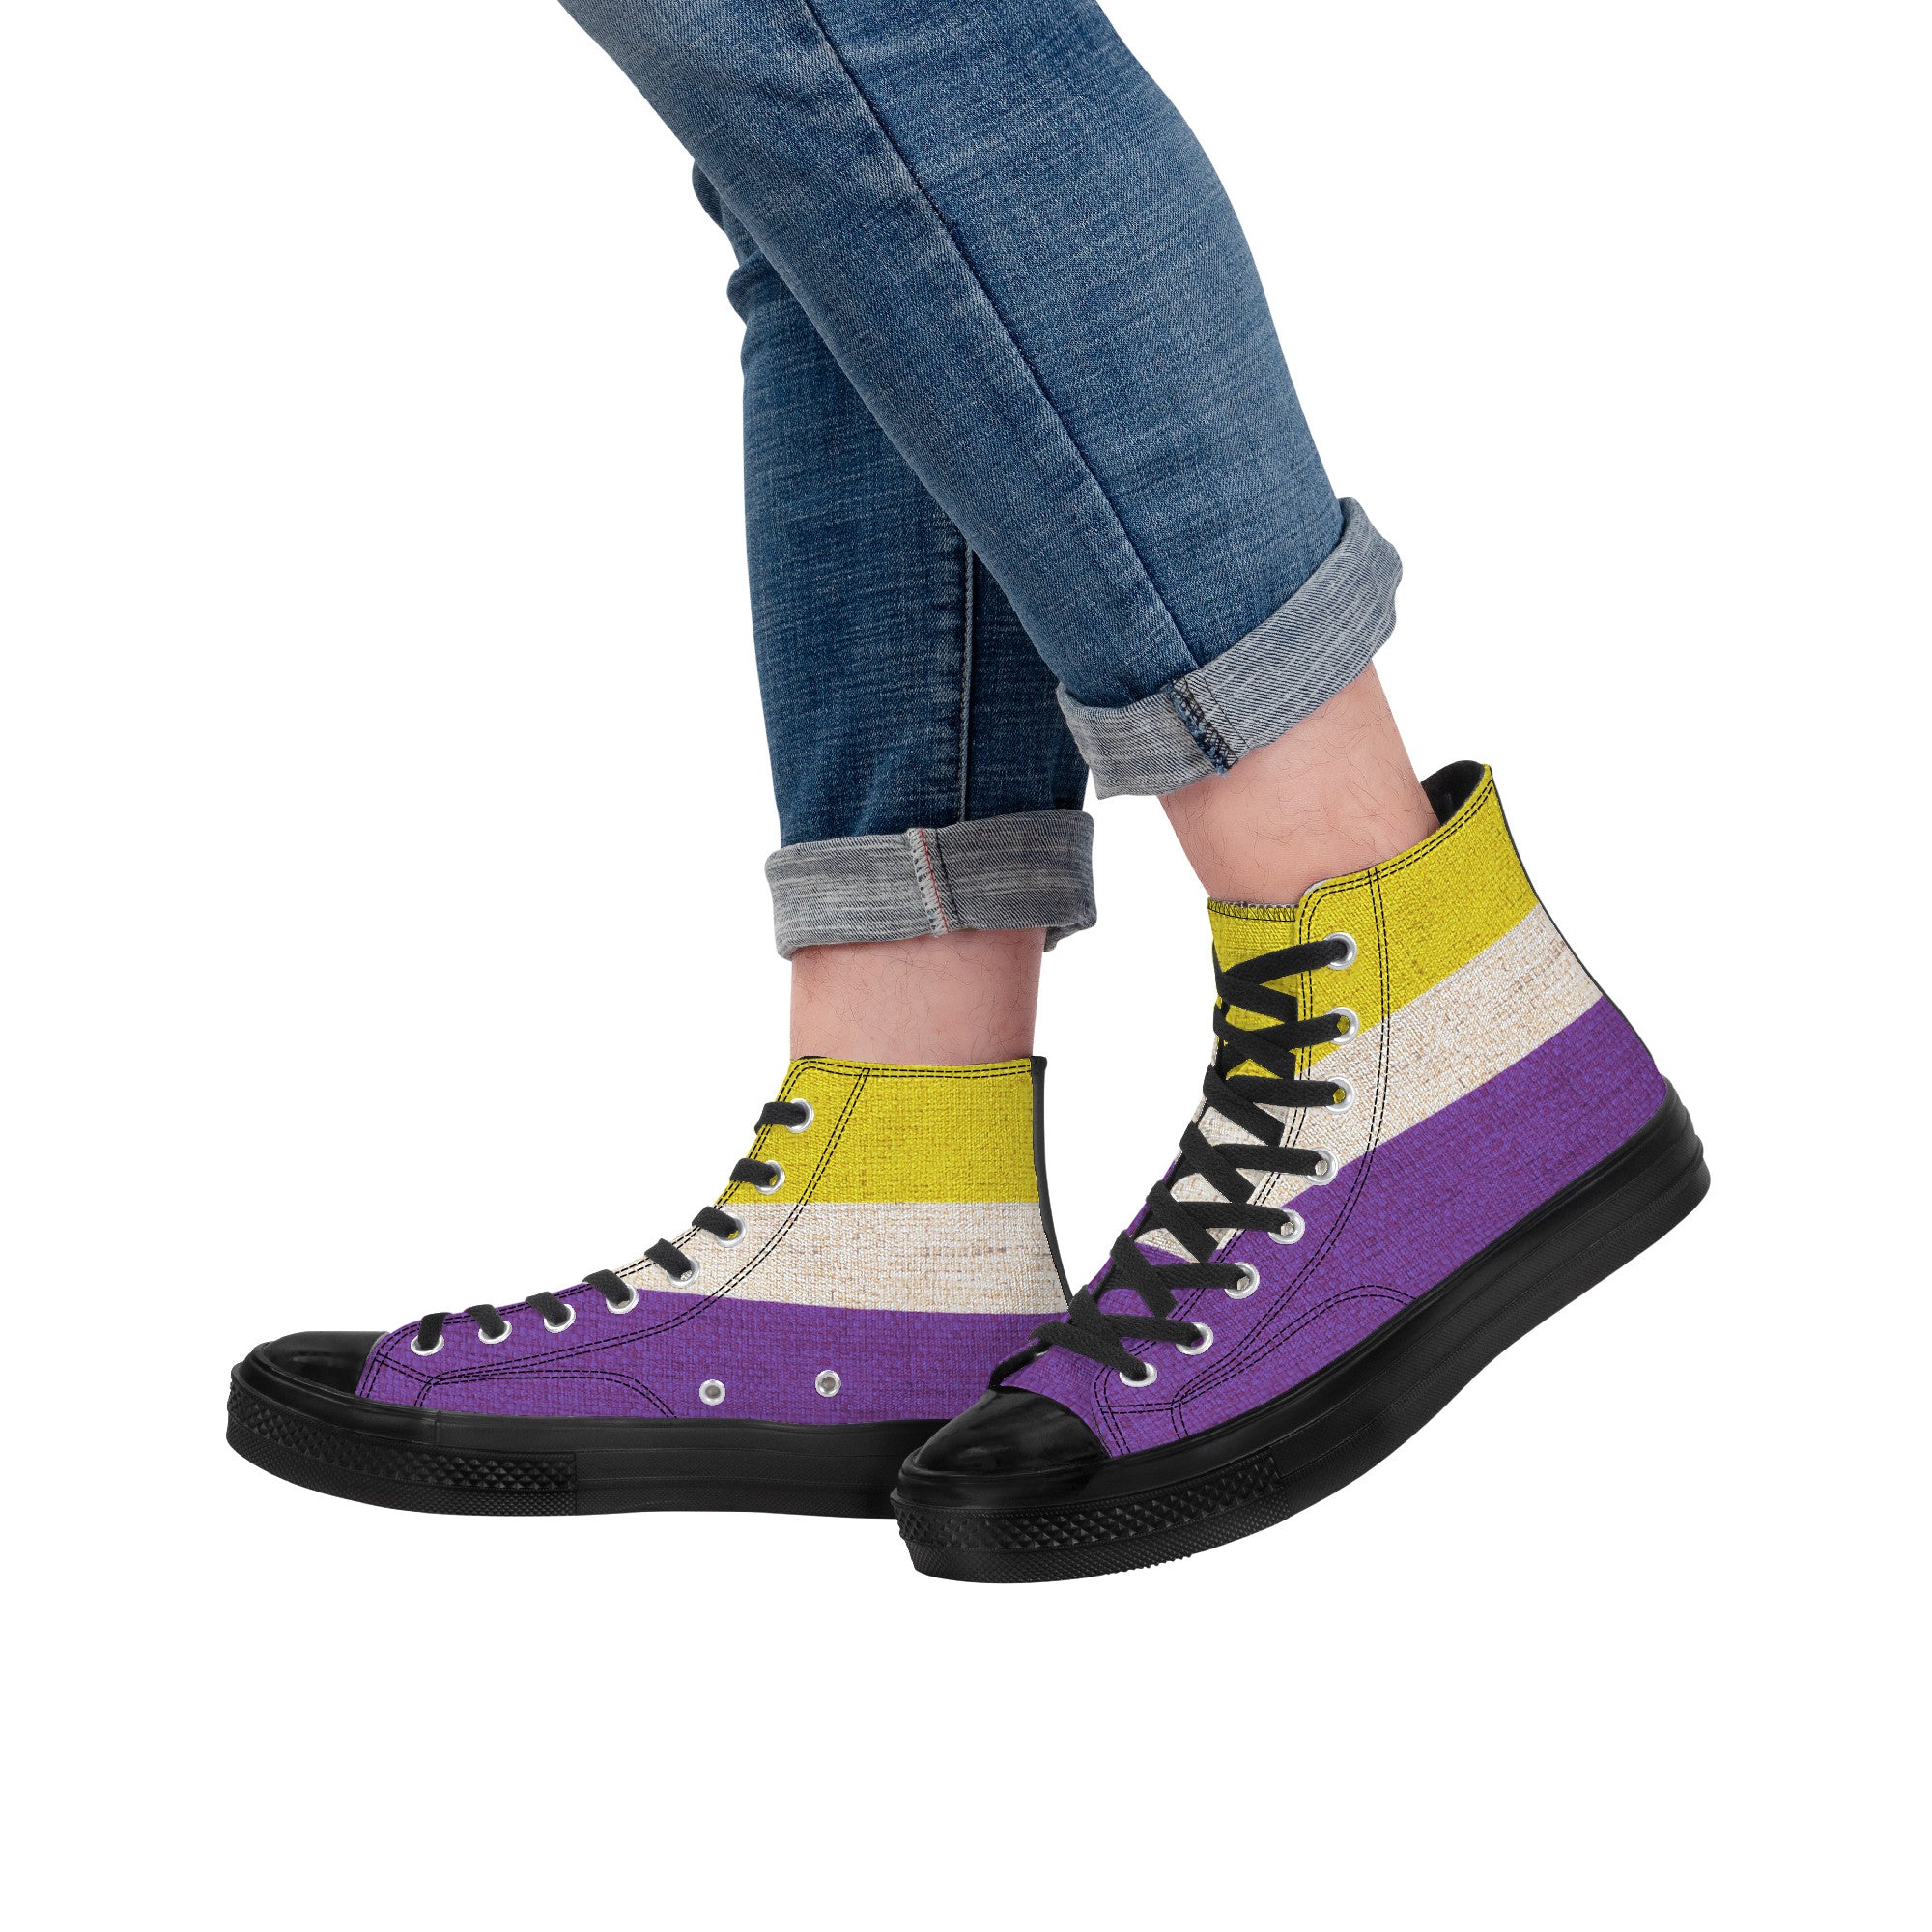 Cool shoes by Gayla Fox | Black High Top Customized | Shoe Zero